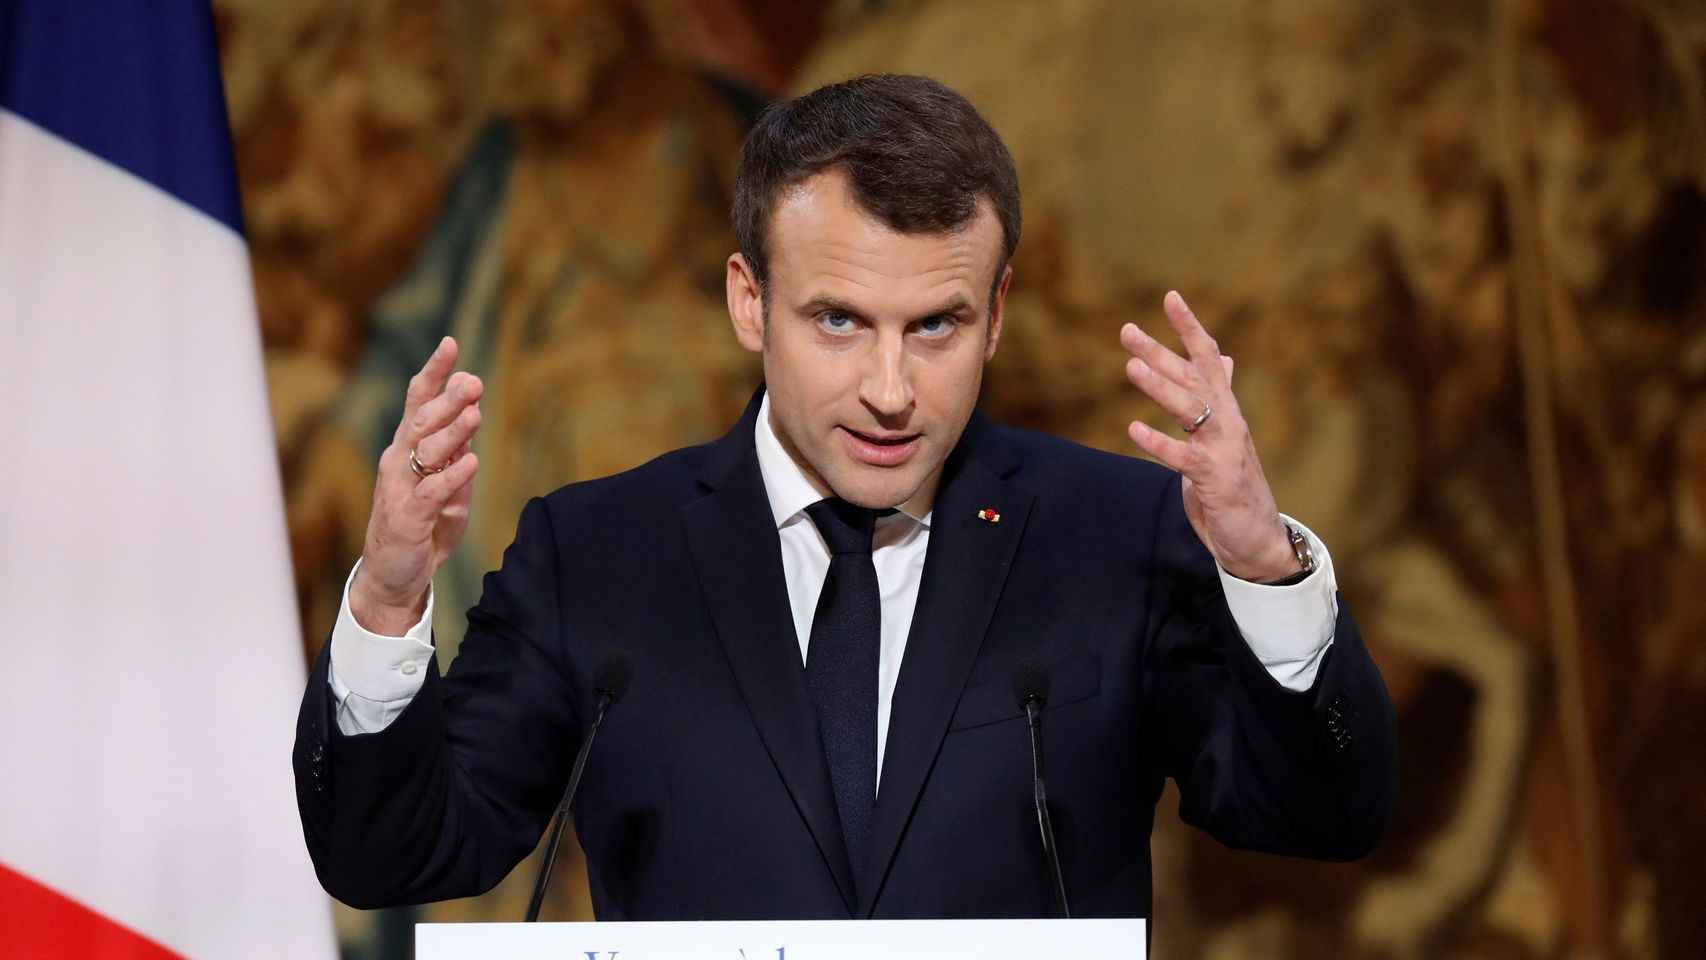 El presidente de la República francesa Emmanuel Macron / CG